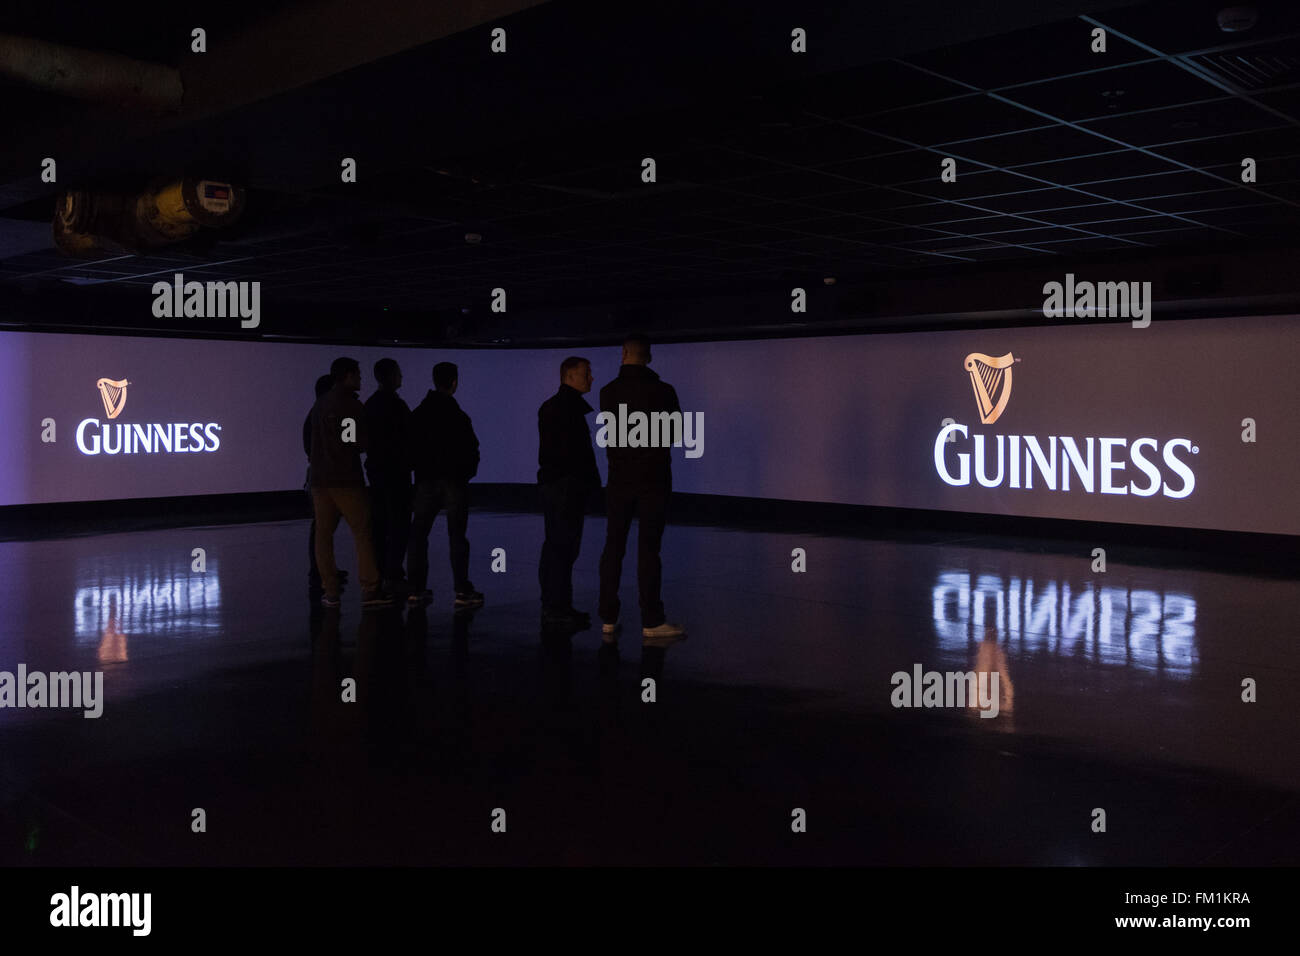 Ai visitatori la visione di schermi giganti all'interno della Guinness Storehouse mostra iconico Guinness la pubblicità televisiva Foto Stock